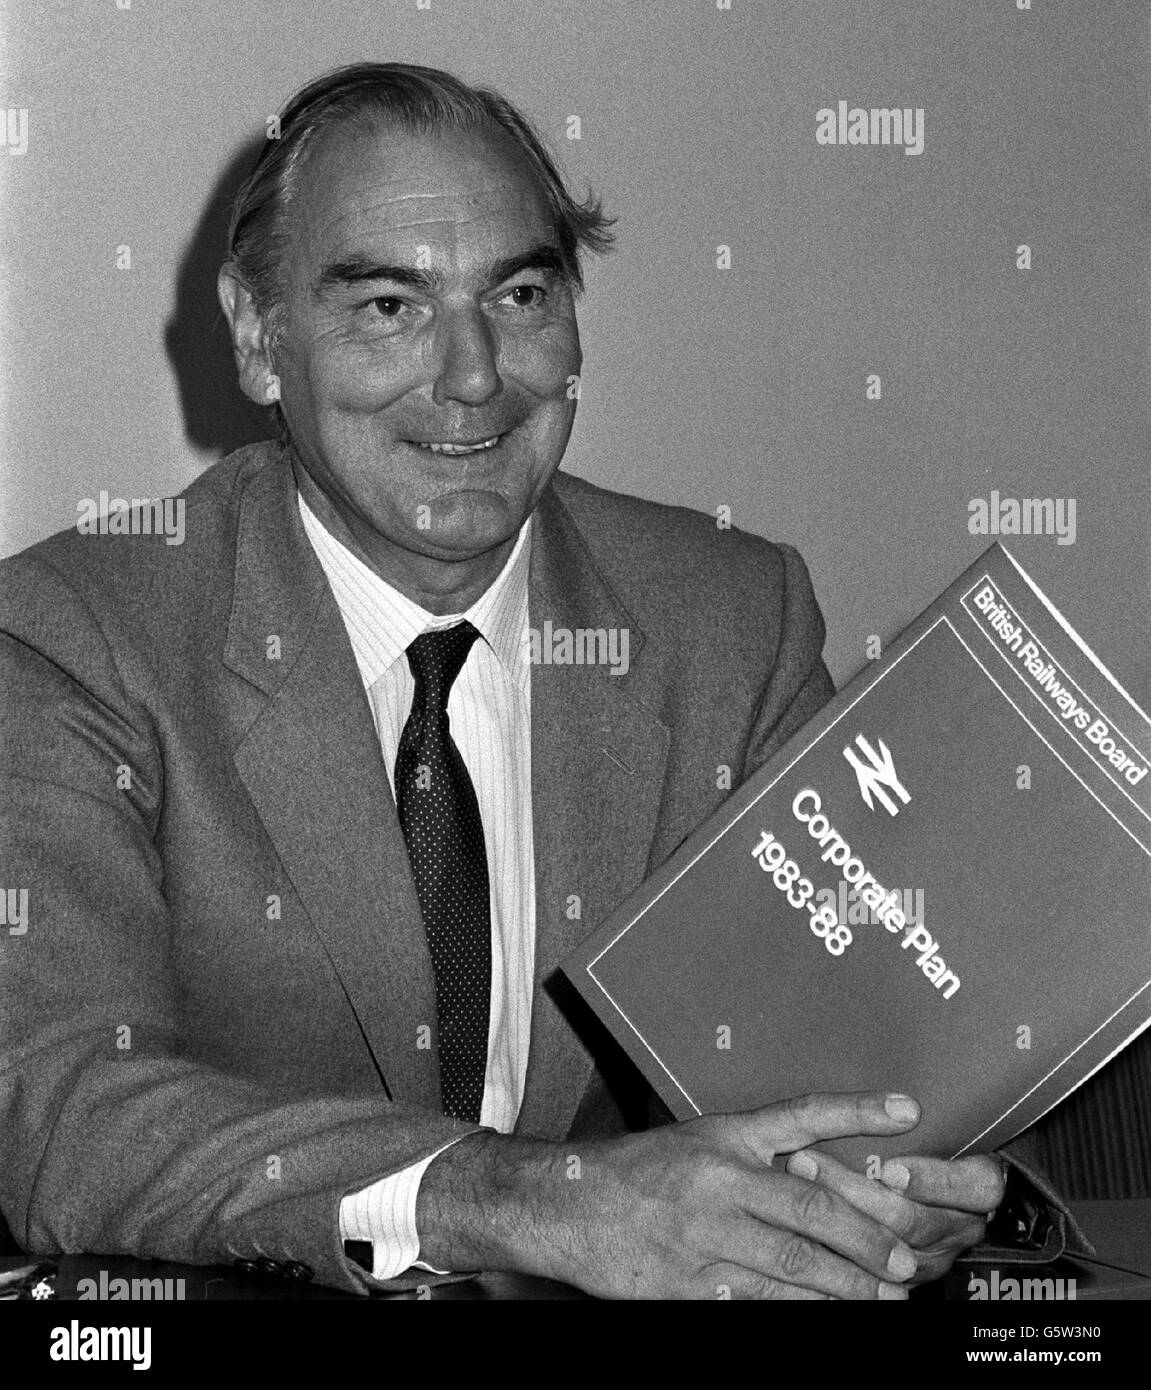 Sir Peter Parker, président de British Rail, avec une copie du plan d'entreprise de BR pour la période 1993-1998 lors d'une conférence de presse à Rail House, Londres. Banque D'Images